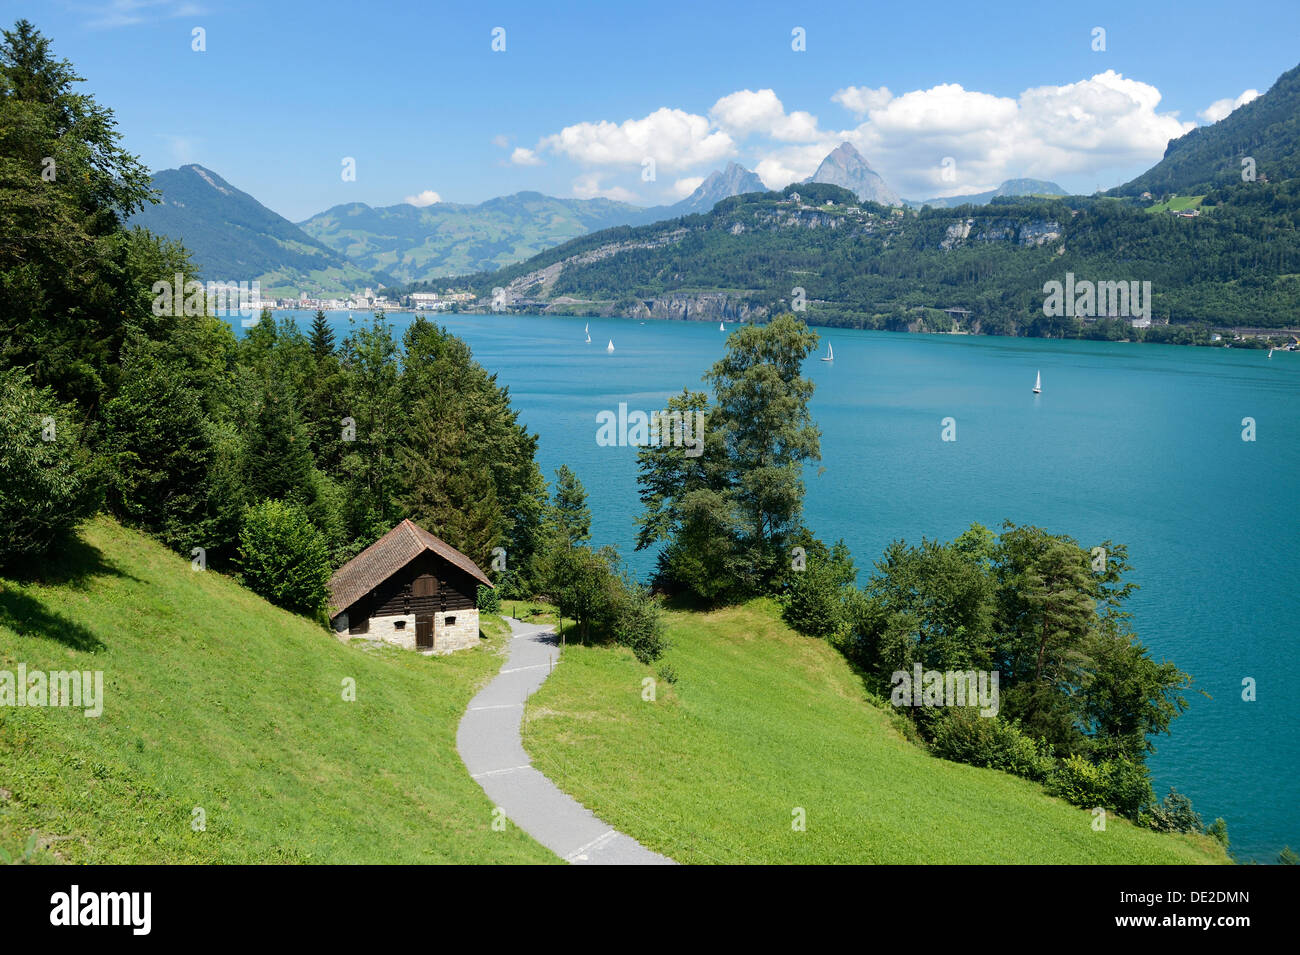 Ruetli, le site fondateur de la Suisse, avec l'Akademie Kleiner et Grosser Mythen montagnes, Zürich, Switzerland, Europe Banque D'Images